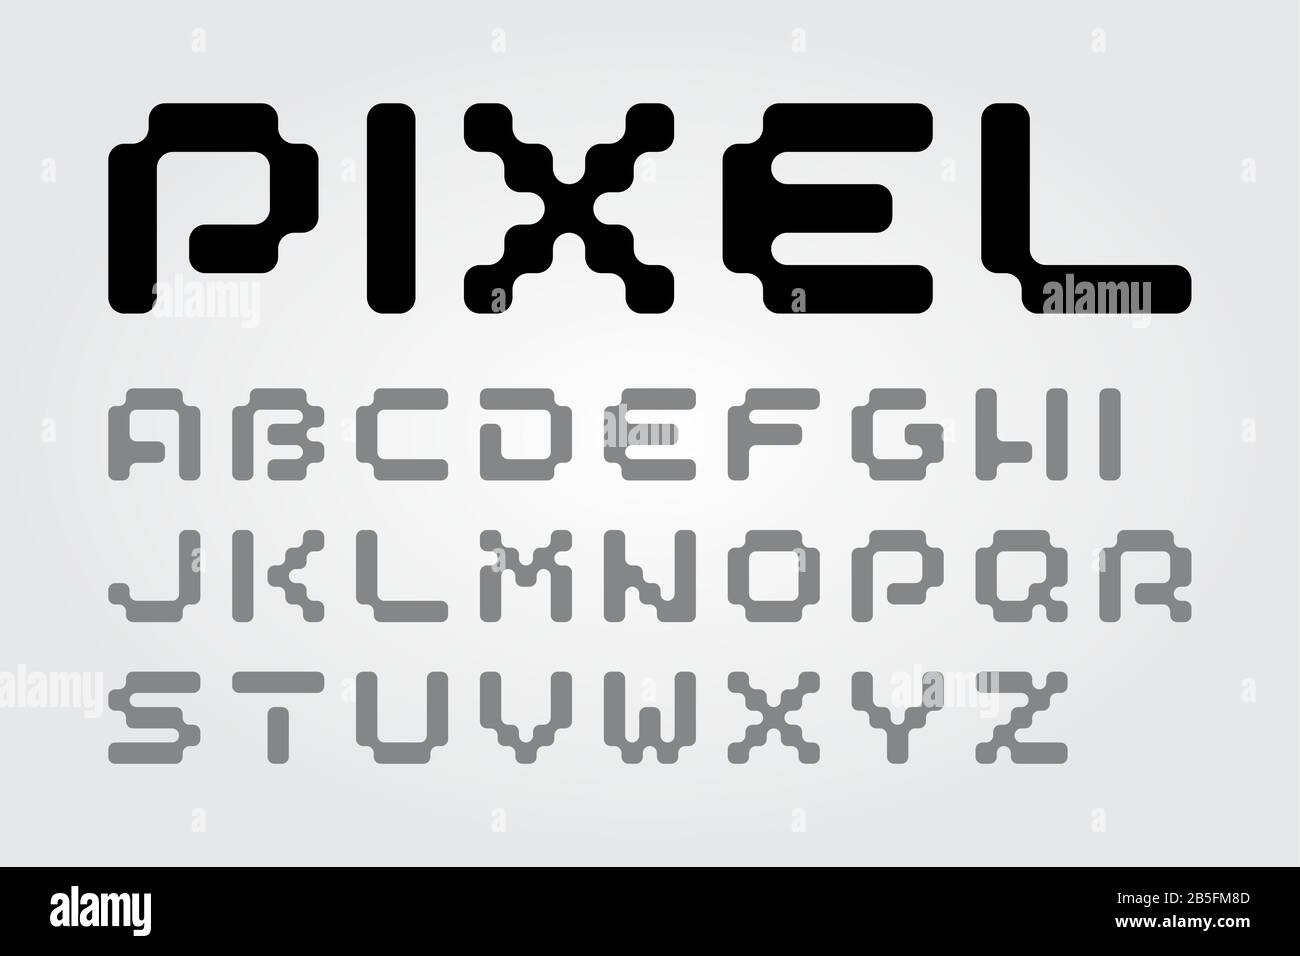 Pixelschrift der alten Schule in einem Modernen Reshape (Vektorschrift). Flache, geometrische, digitale Computerspielart in Großbuchstaben. Stock Vektor